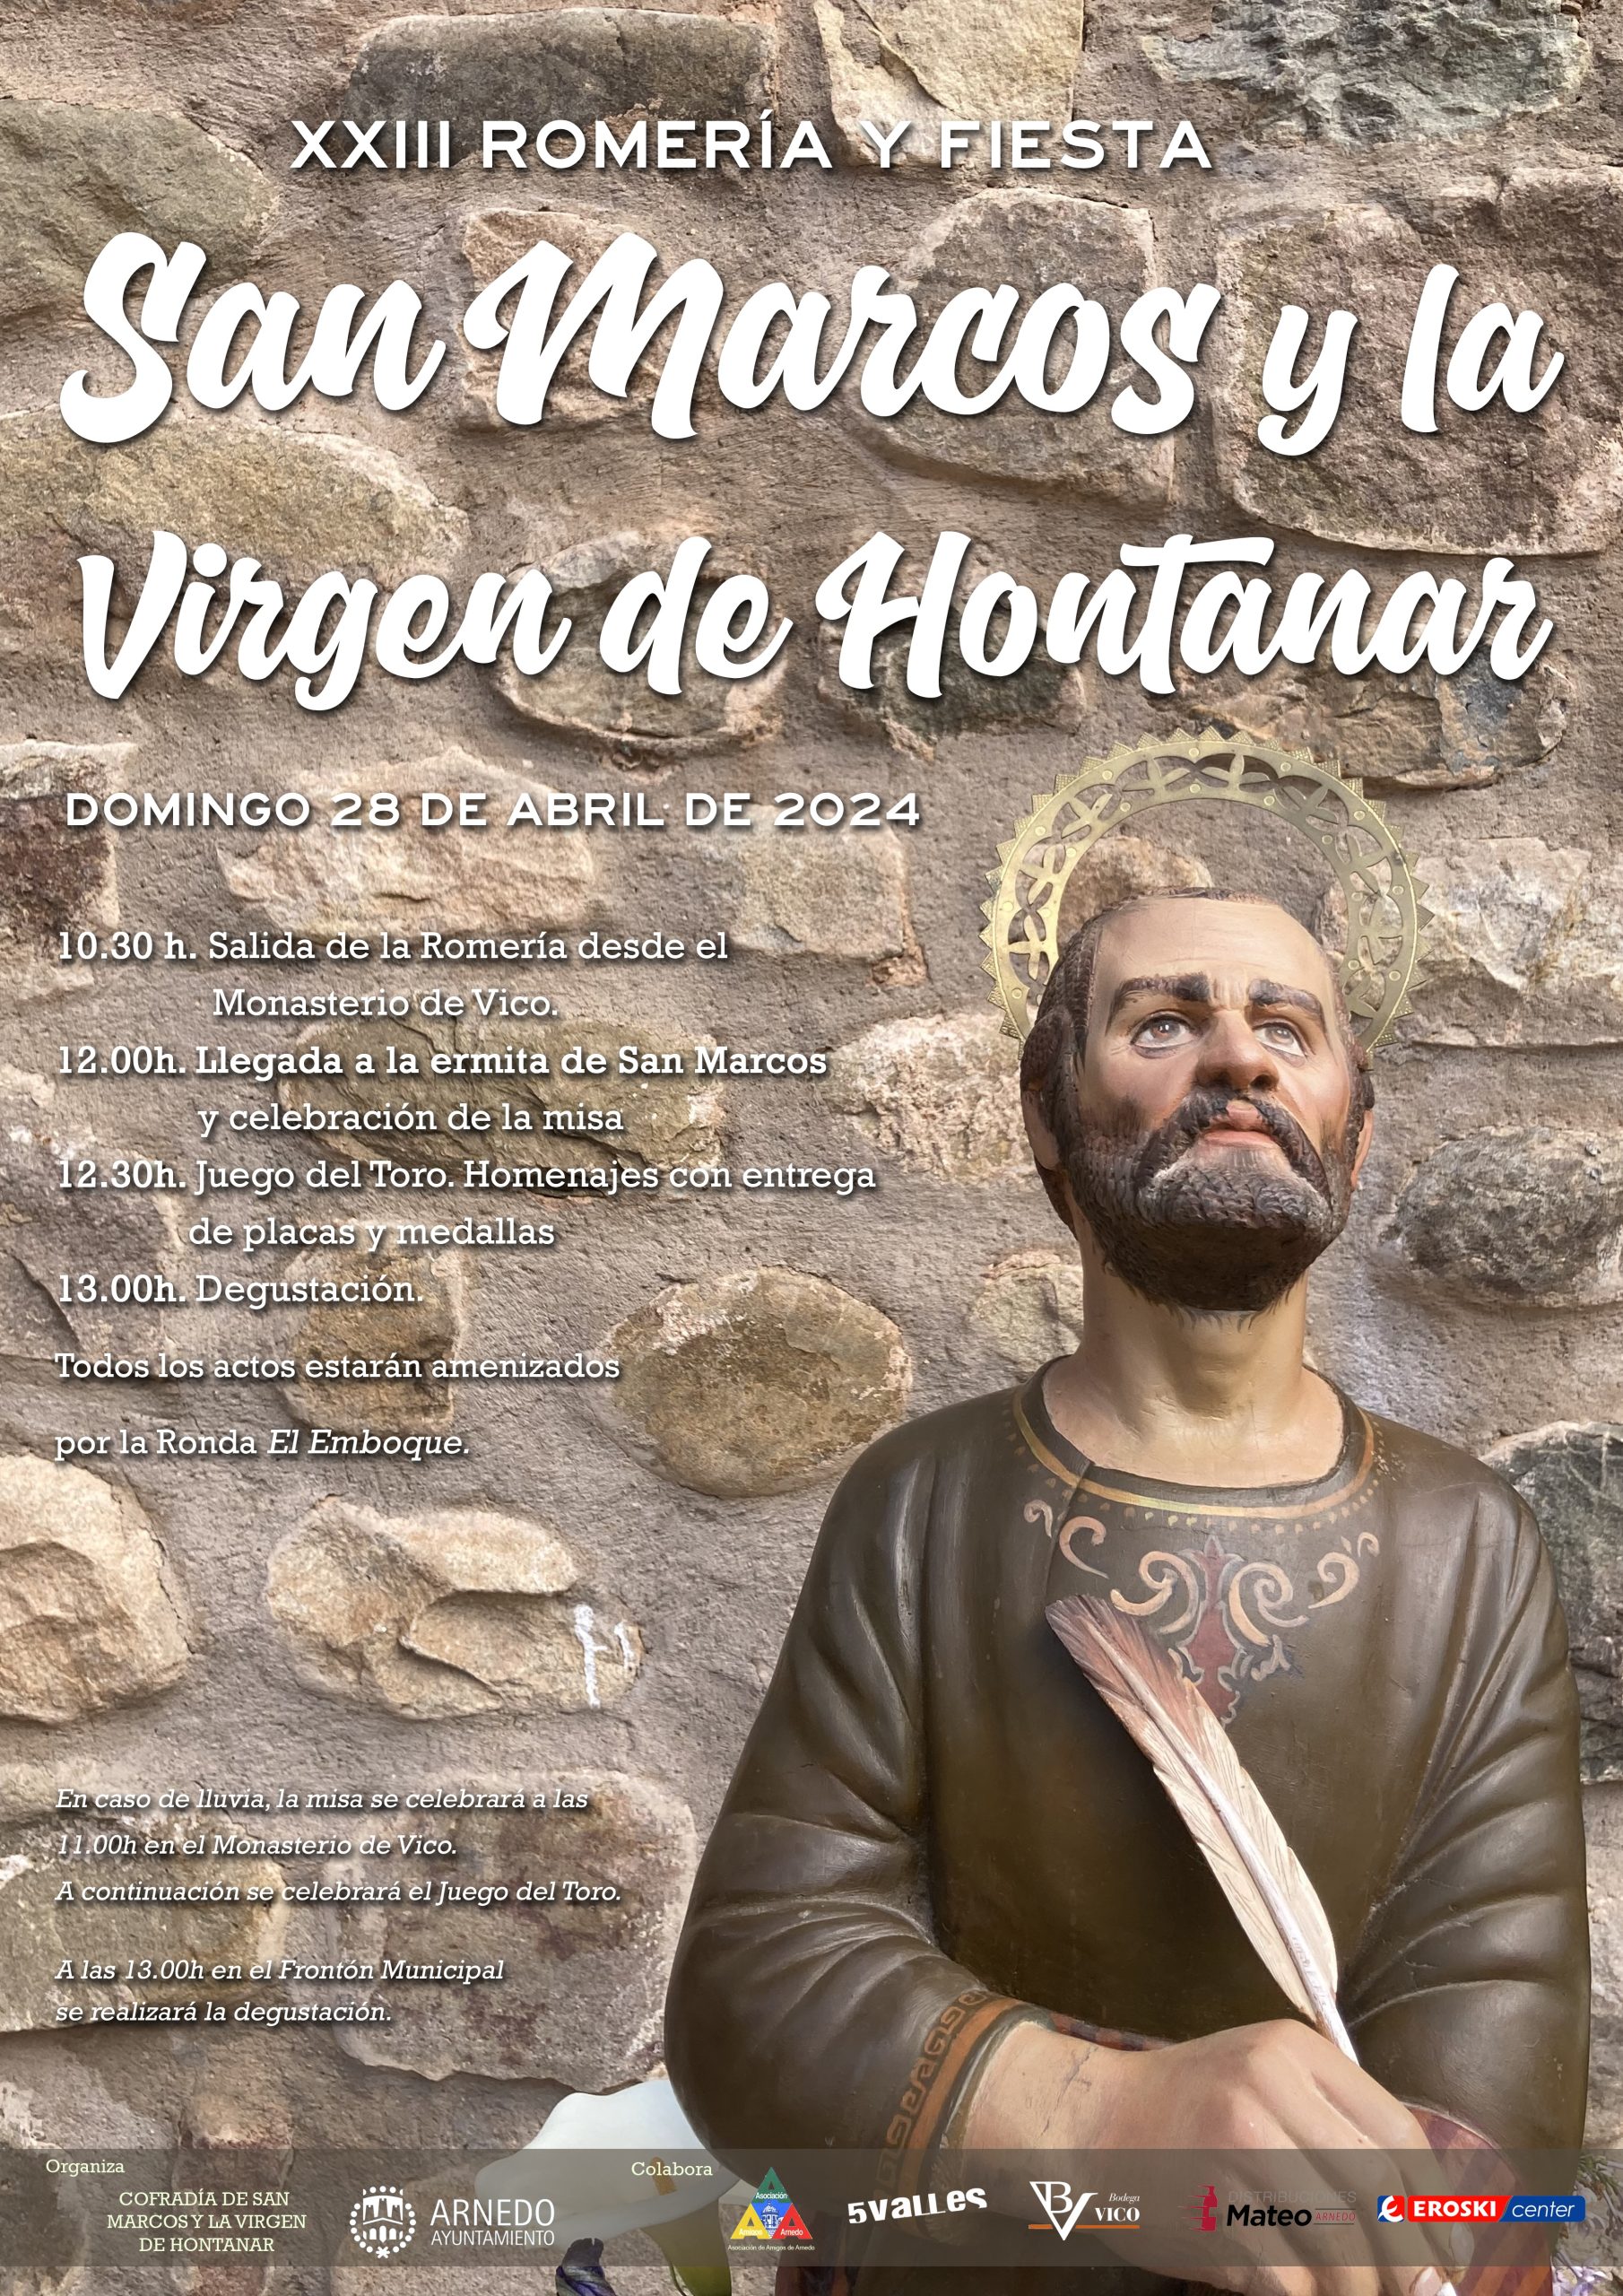 XXIII Romería de San Marcos y la Virgen de Hontanar